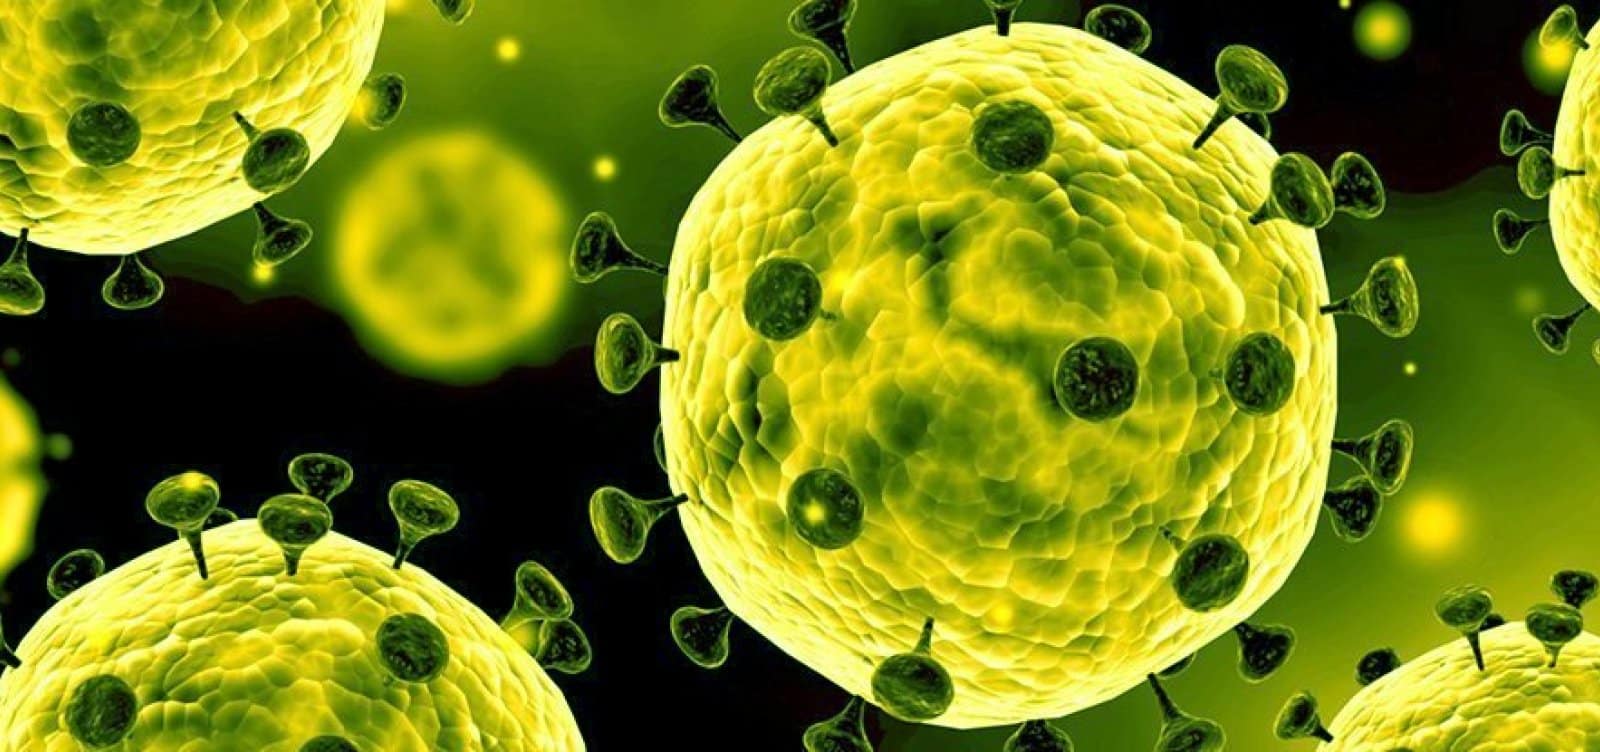 Vírus, o que são? Definição, estrutura, viroses e como se reproduzem